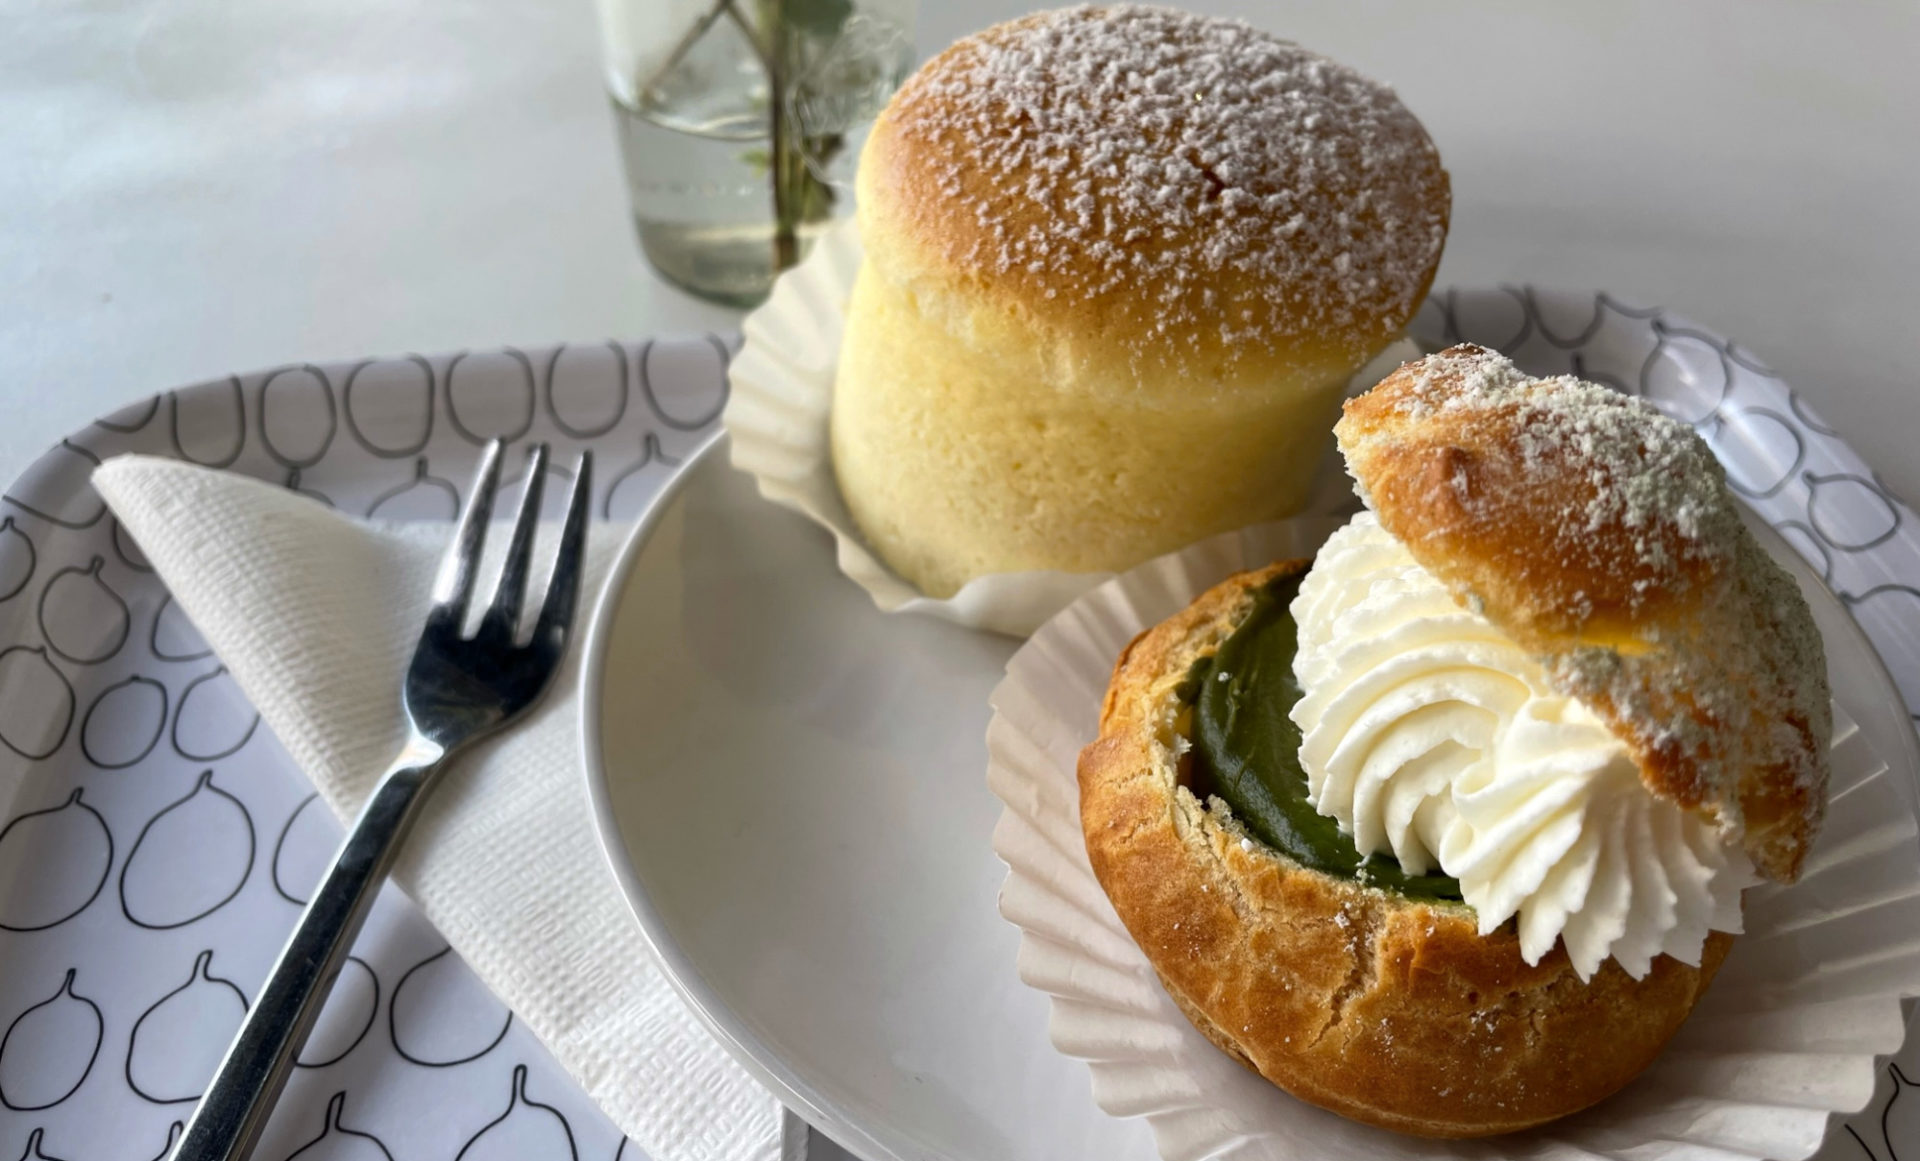 Satisfy sugar cravings with C-U bakery desserts